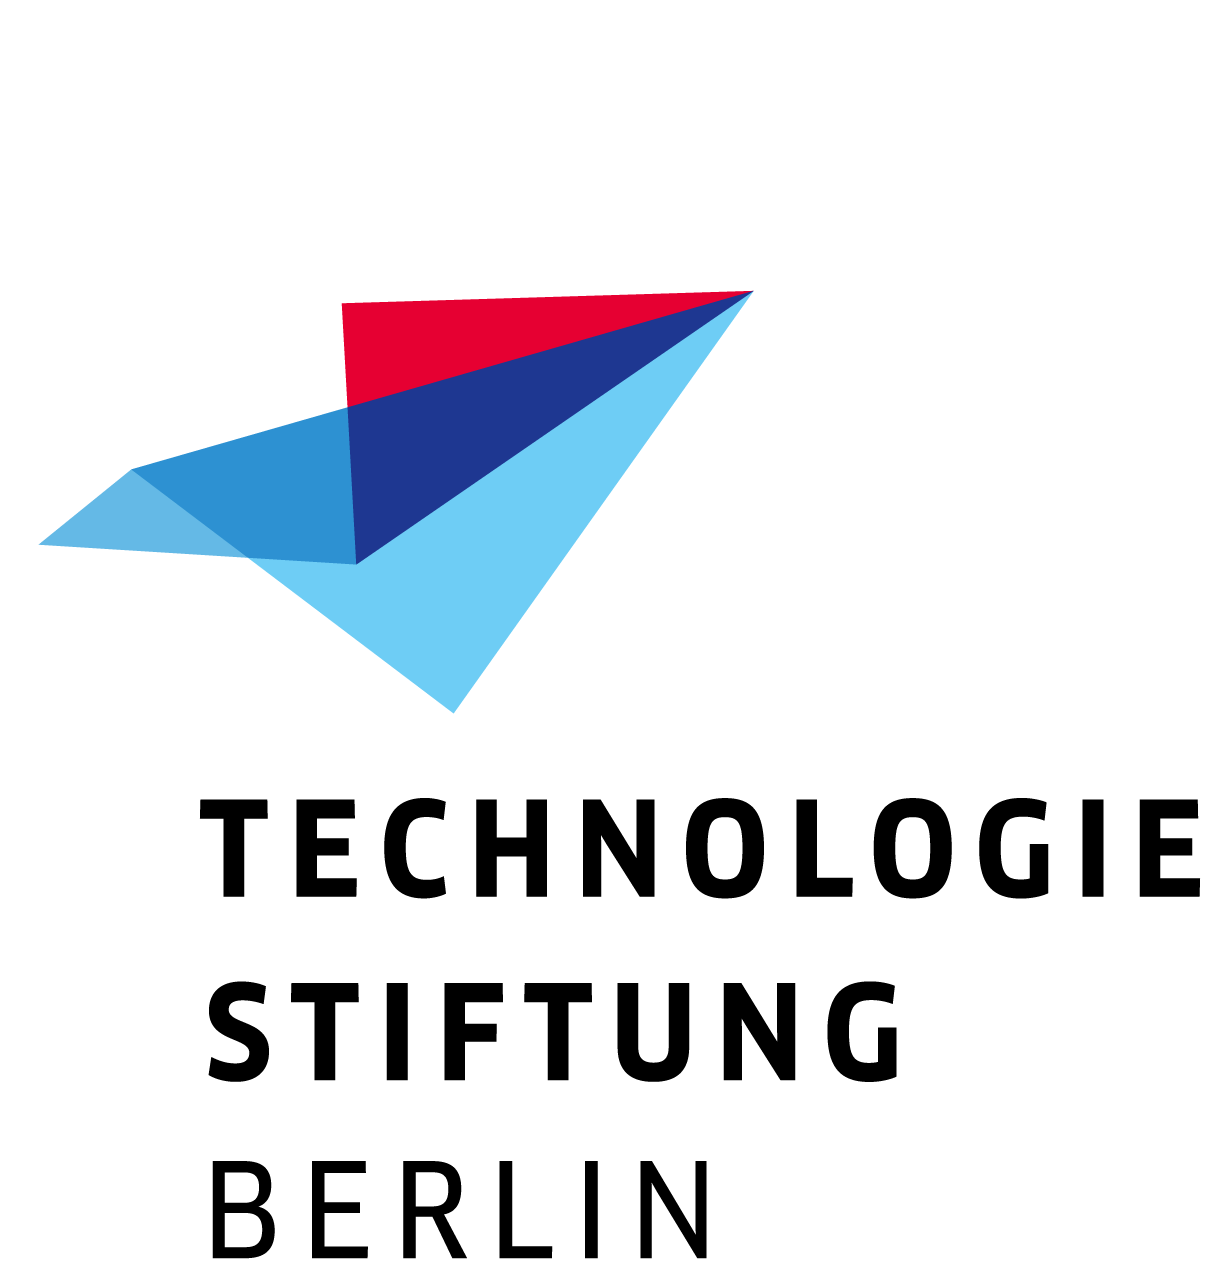 Technologiestiftung Berlin Logo